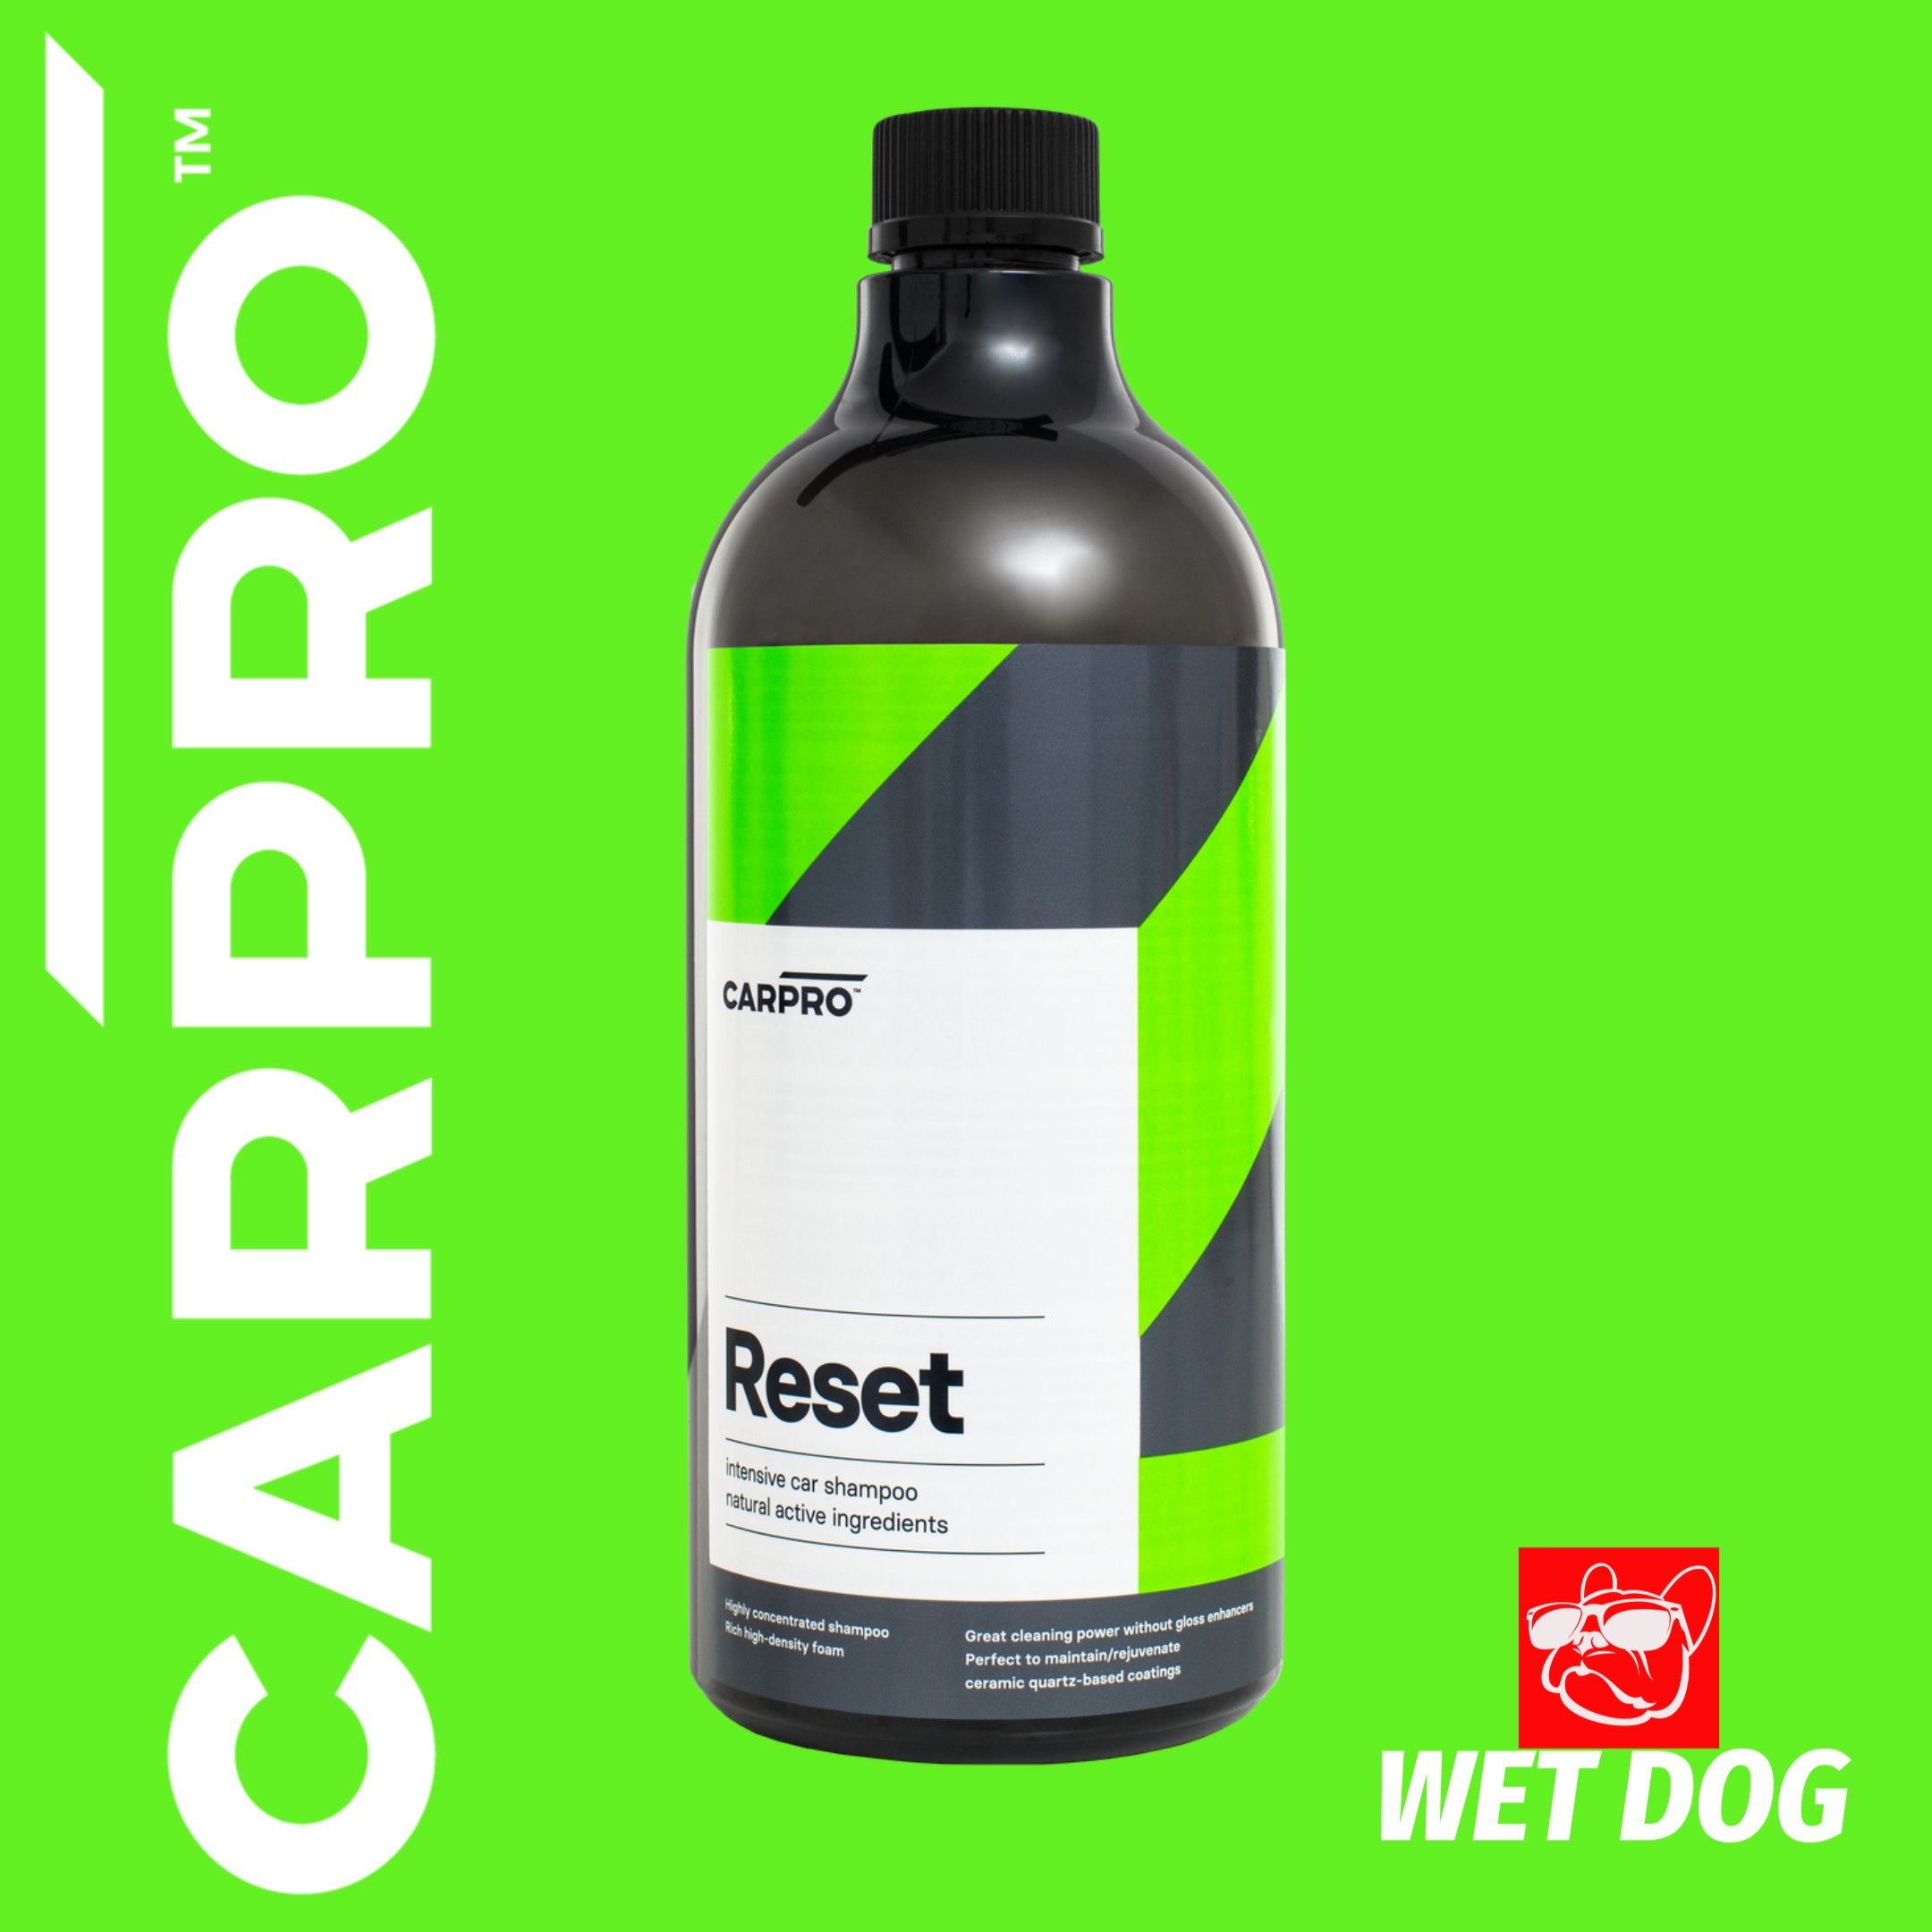 CARPRO Reset Car Shampoo